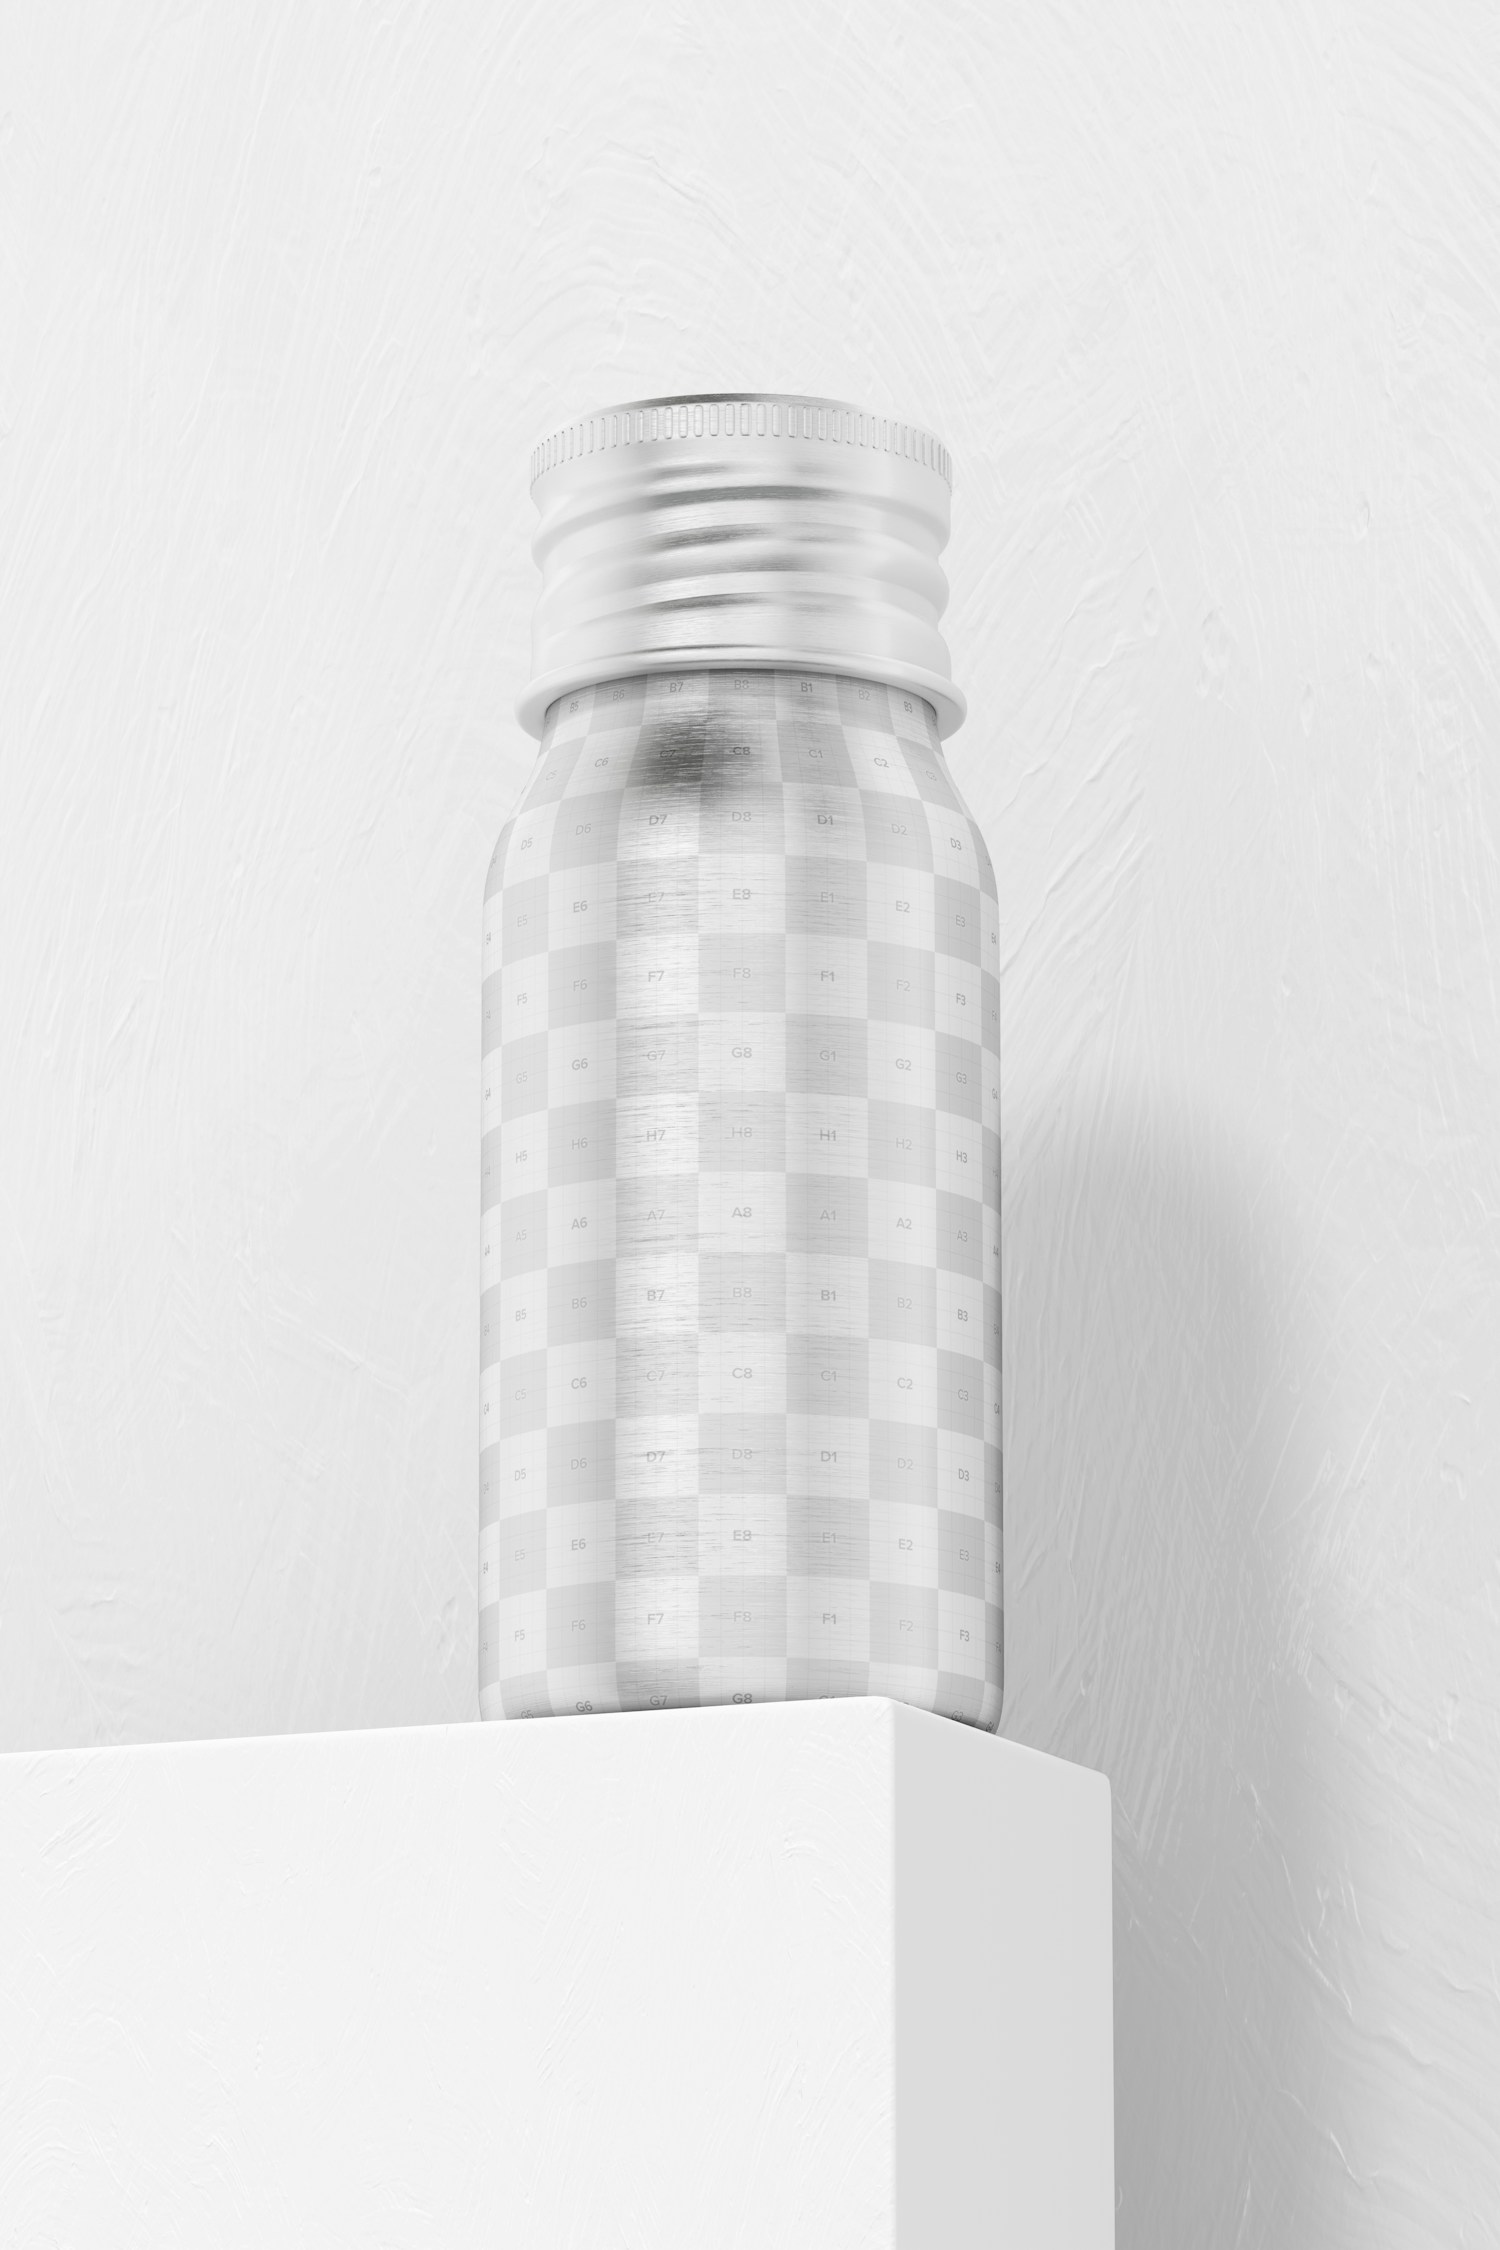 1 oz Aluminium Bottle Mockup, Low Angle